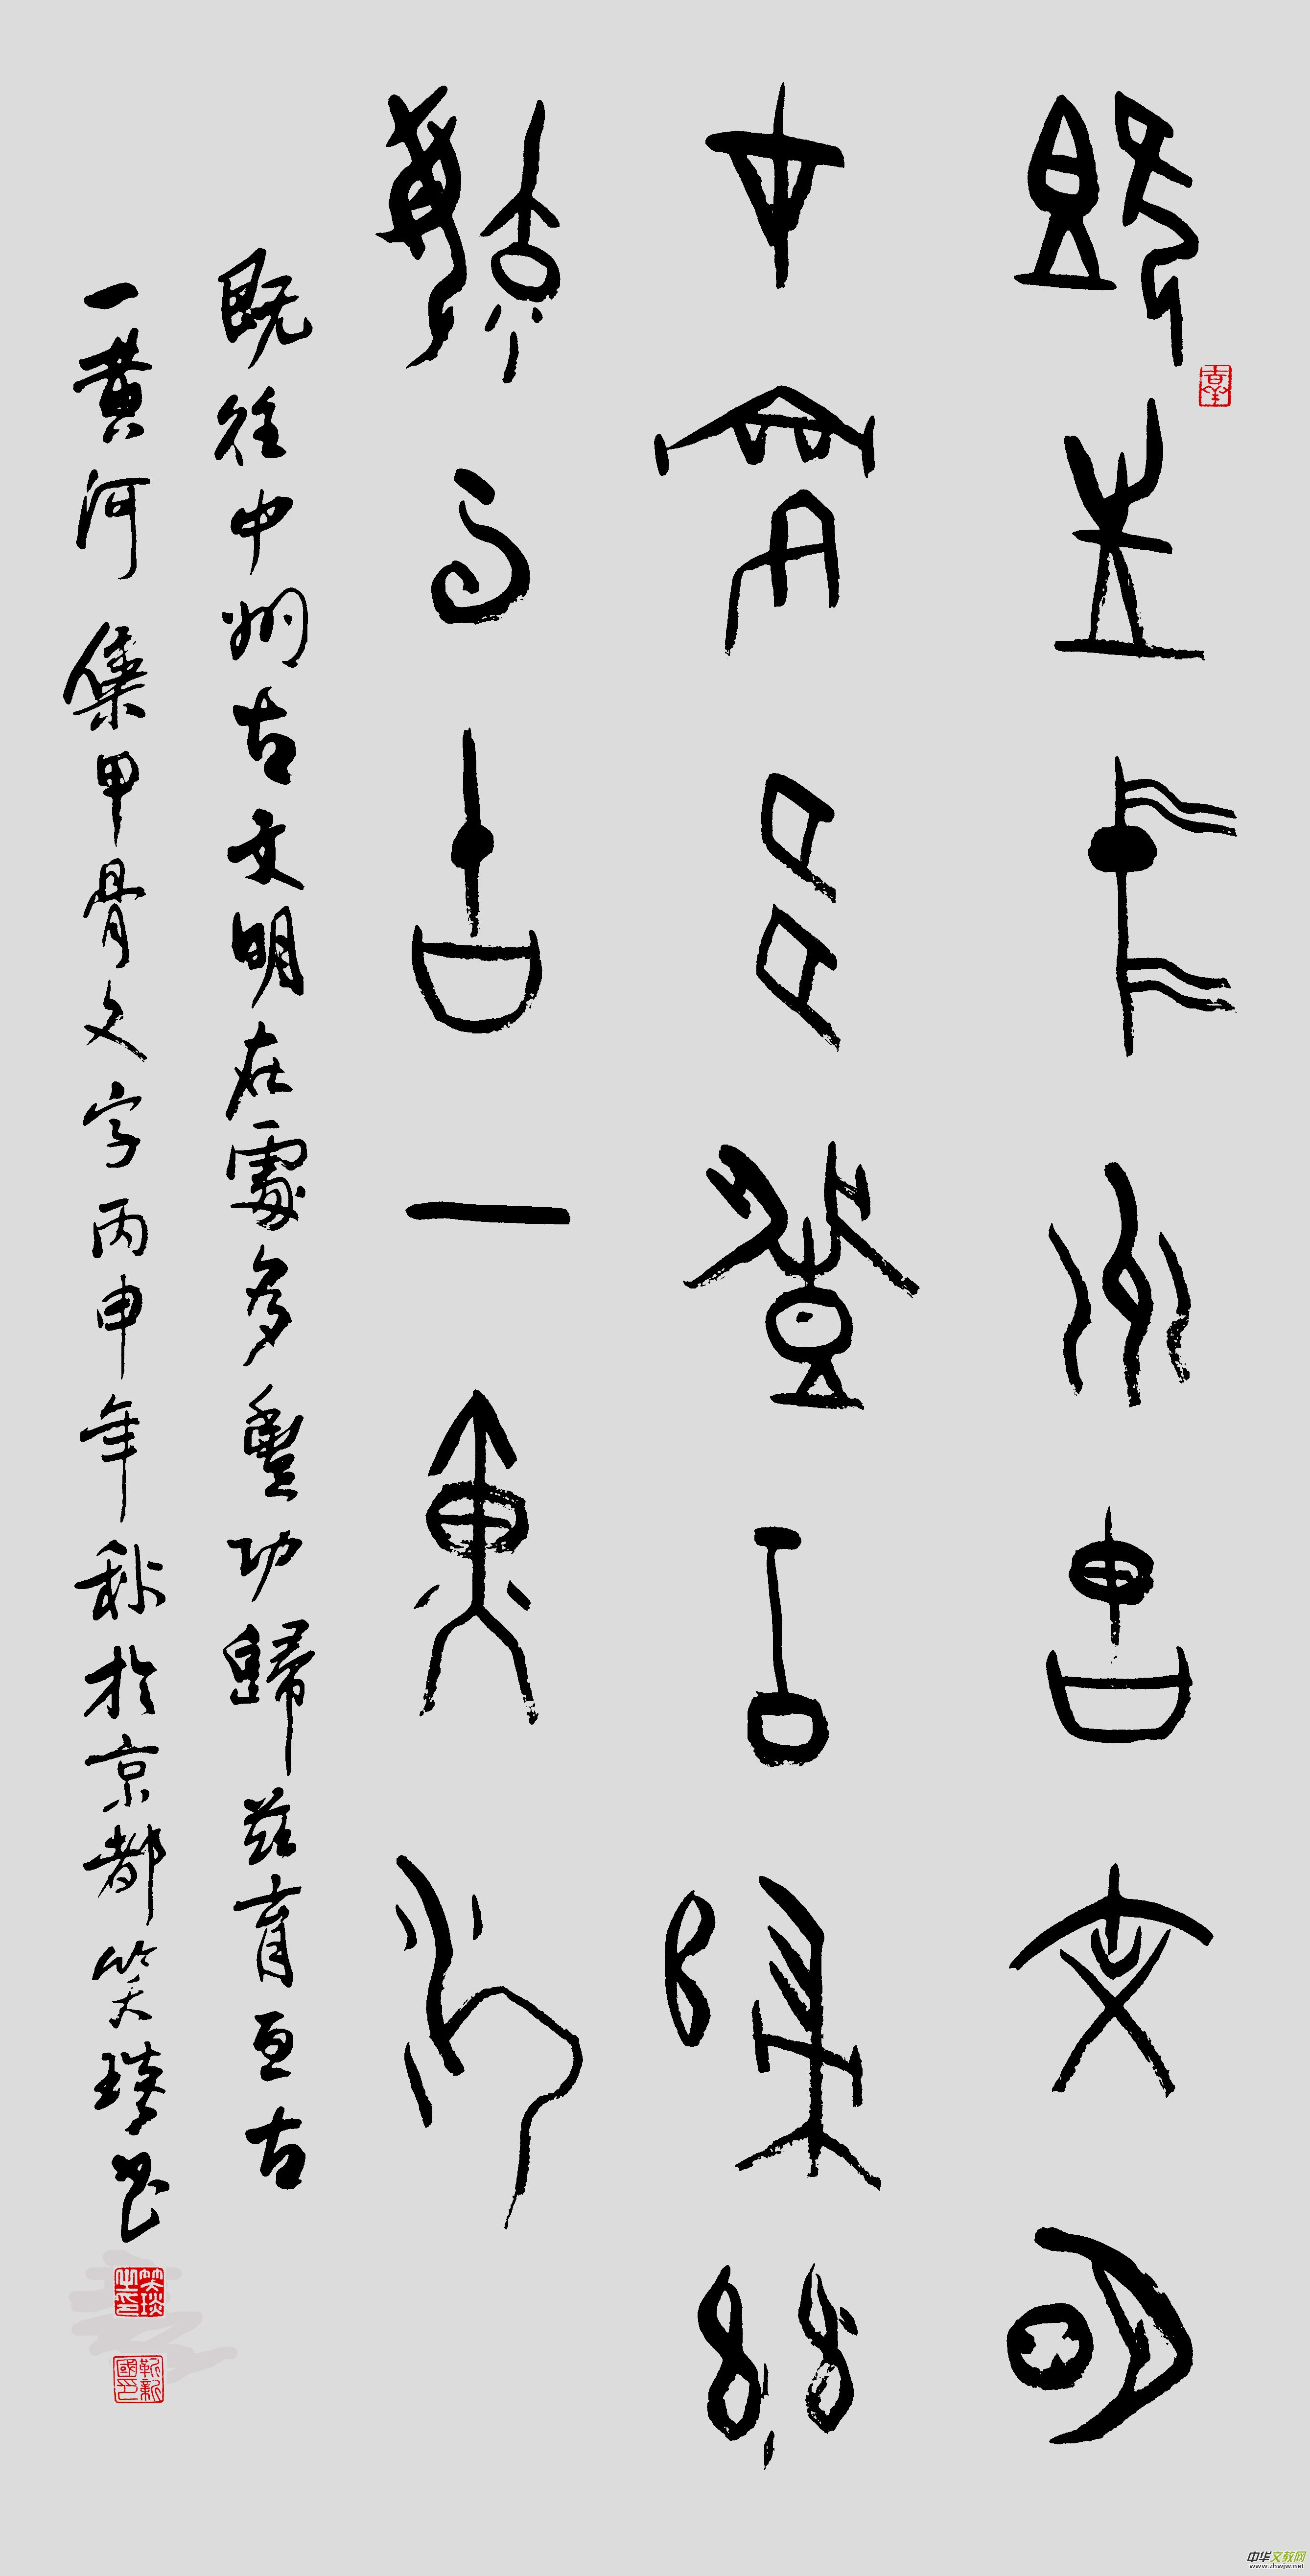 甲骨文与汉字对照表 - 知乎